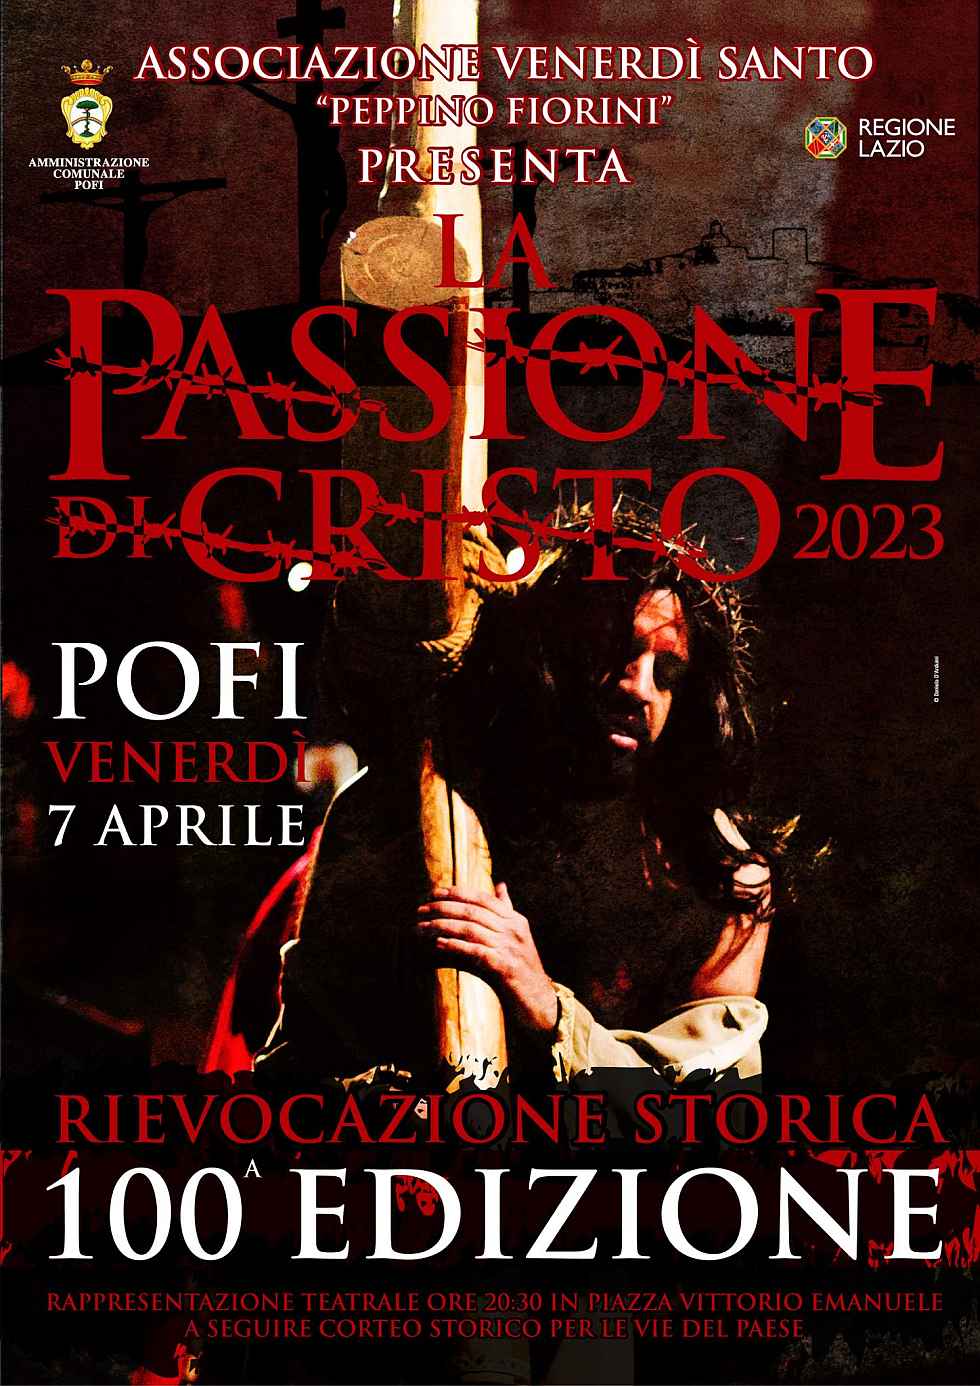 Pofi (FR)
"La Passione di Cristo"
7 Aprile 2023